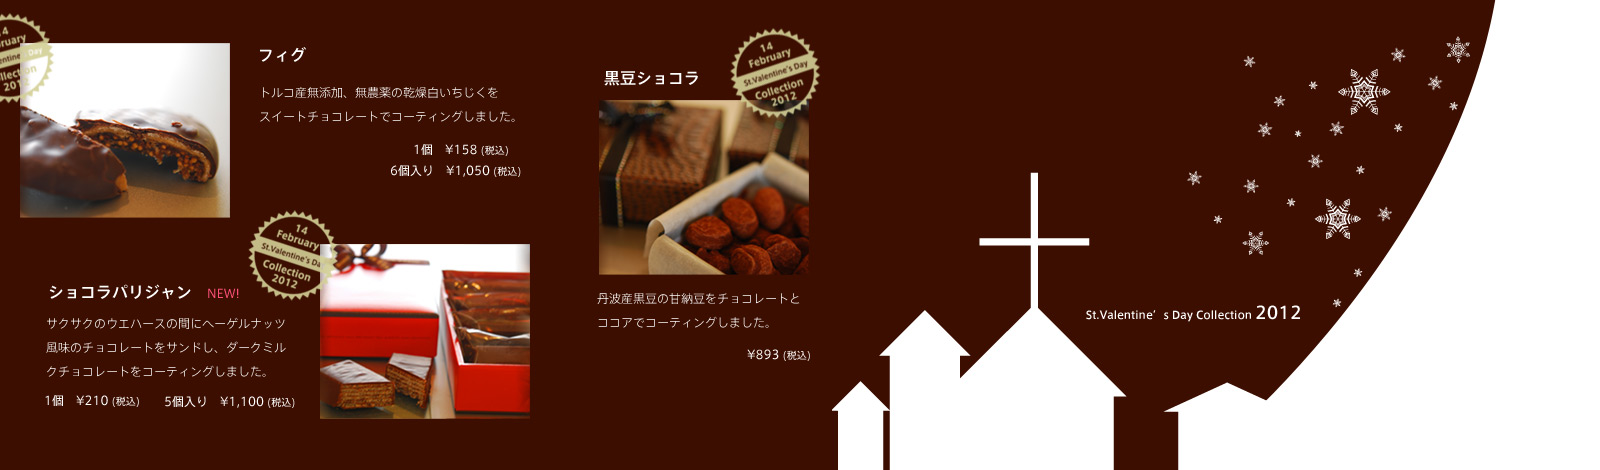 フィグ/ショコラパリジャン/黒豆ショコラ